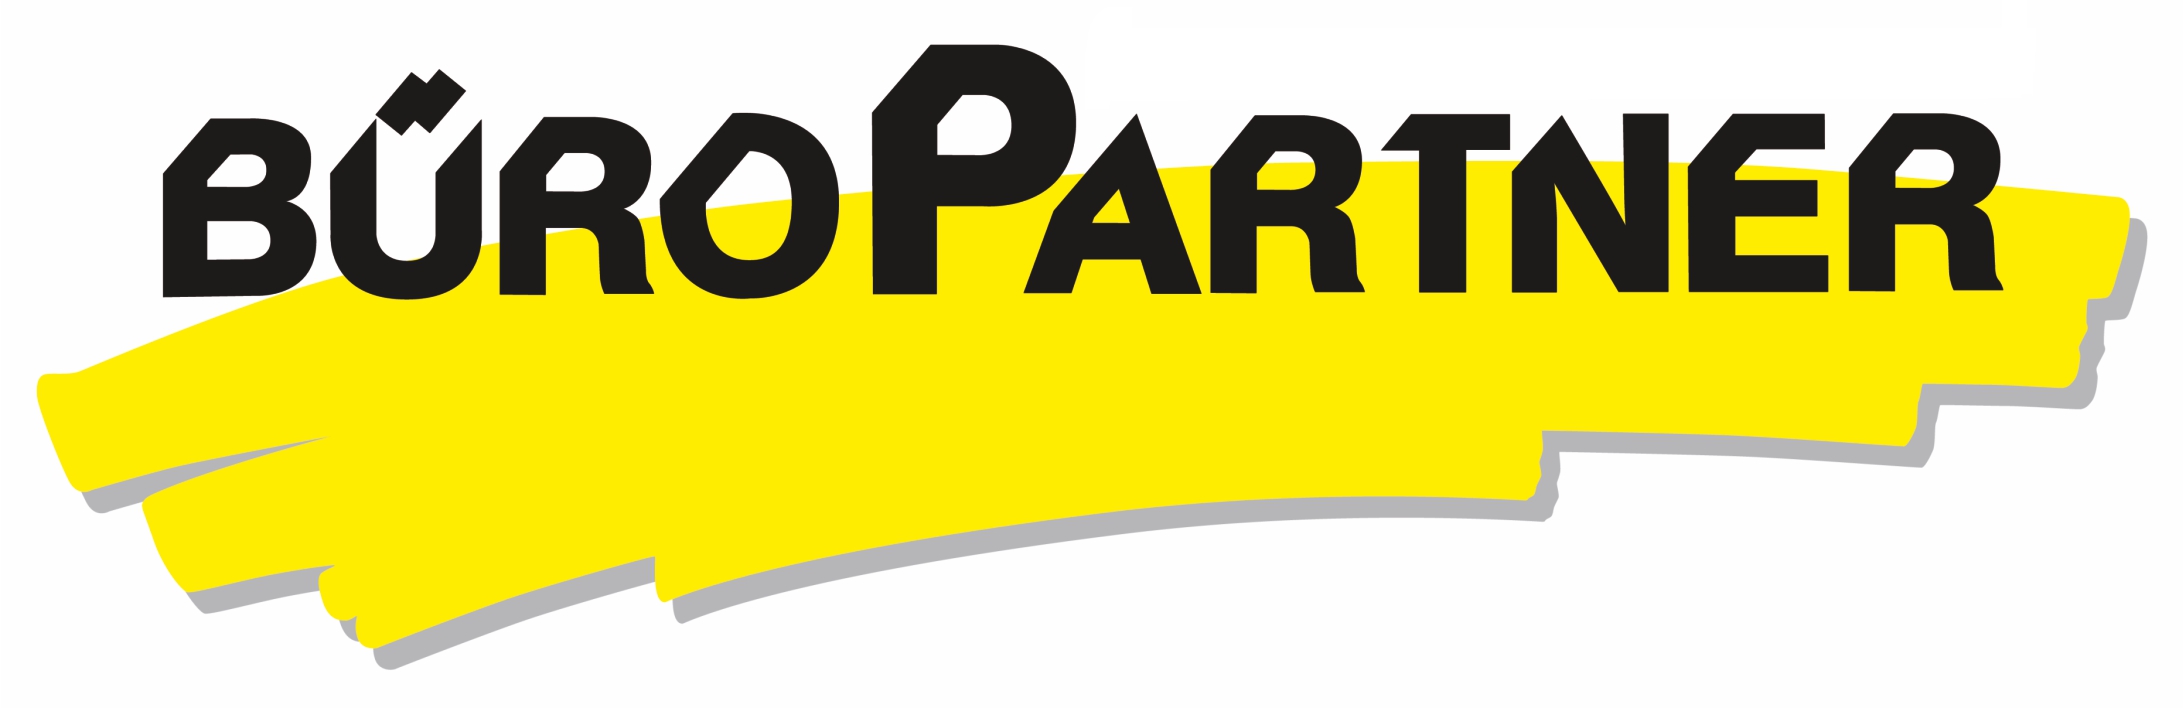 BüroPartner Logo.jpg